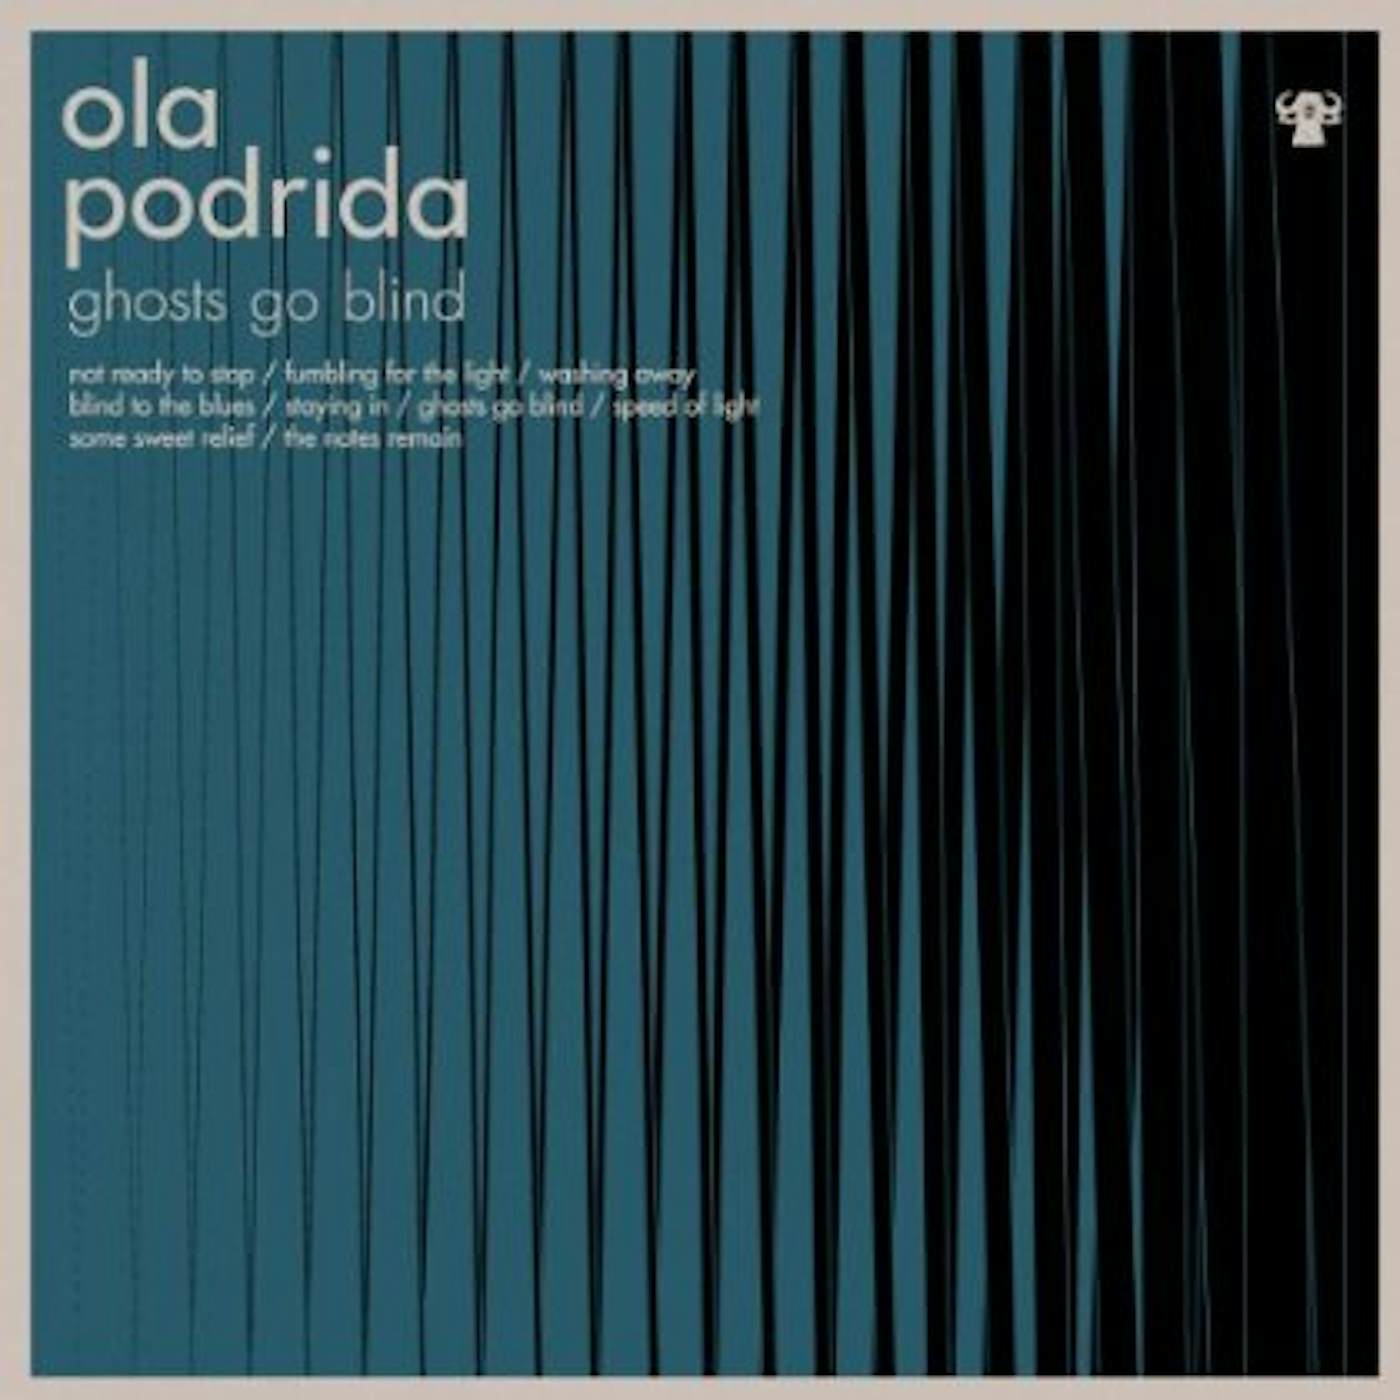 Ola Podrida Ghosts Go Blind Vinyl Record